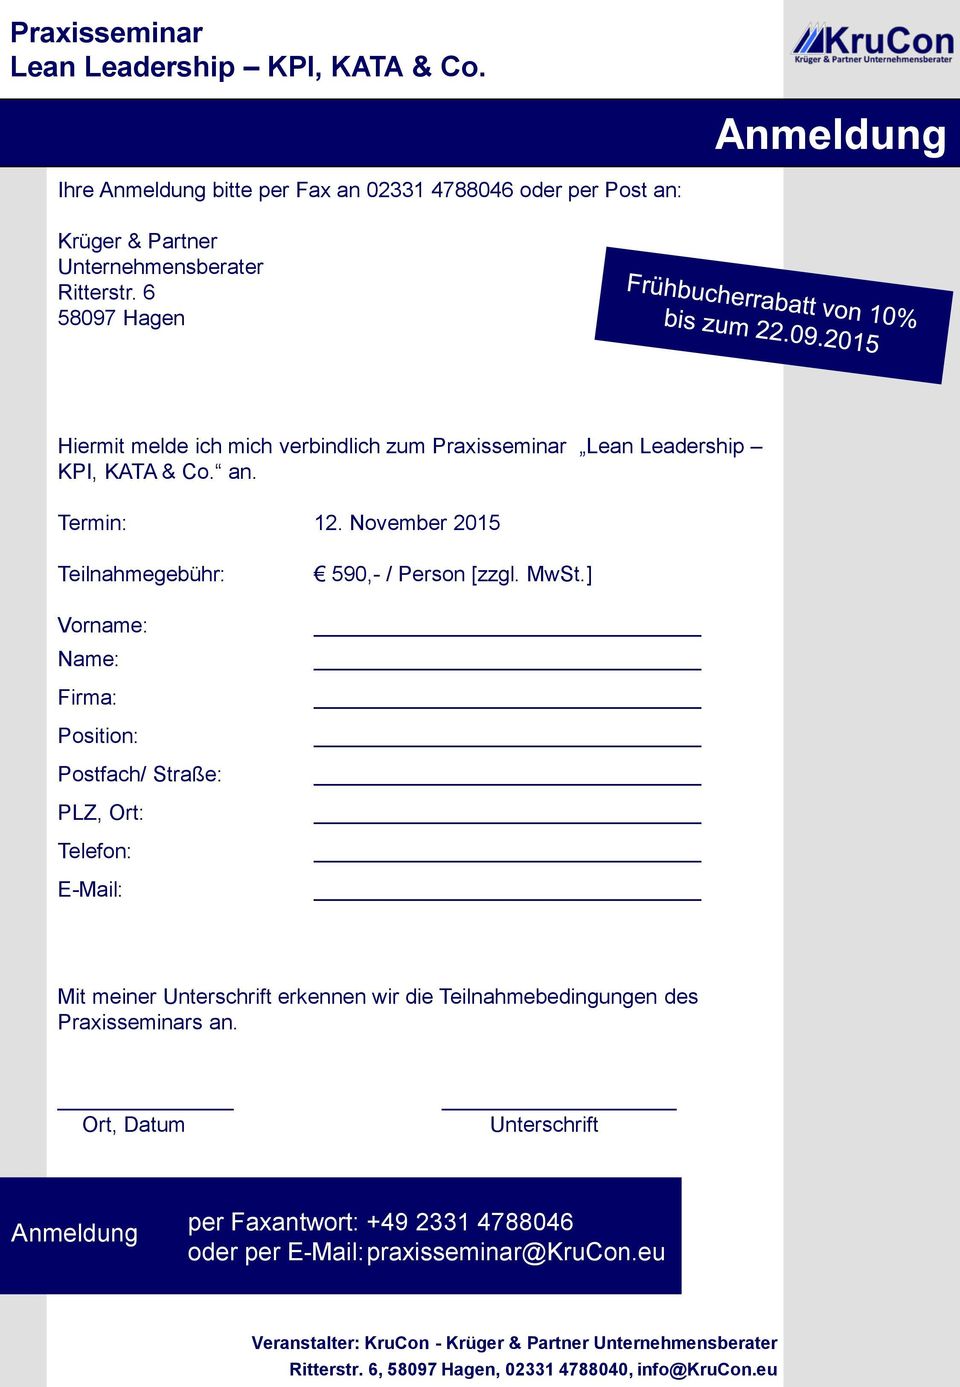 November 2015 Teilnahmegebühr: Vorname: Name: Firma: Position: Postfach/ Straße: PLZ, Ort: Telefon: E-Mail: 590,- / Person [zzgl. MwSt.